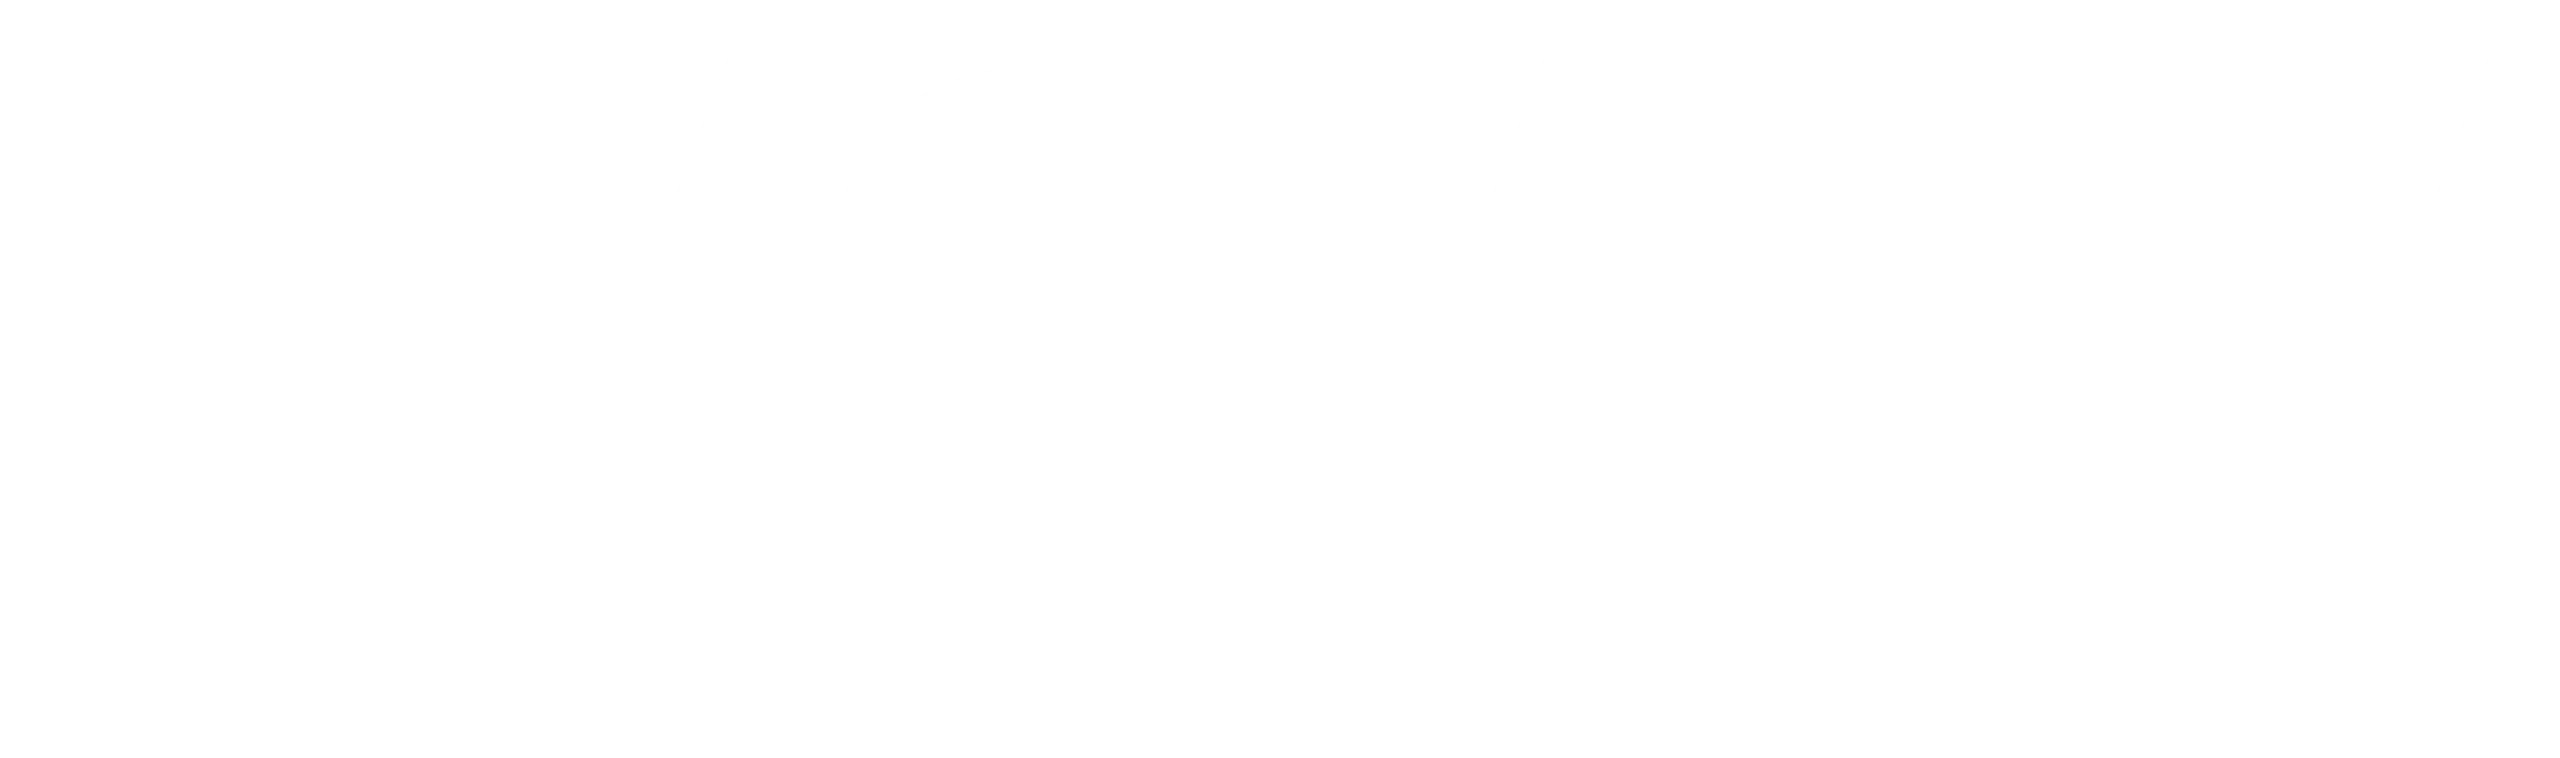 BSH Bosch und Siemens Hausgeraete logo weiss 80 scaled